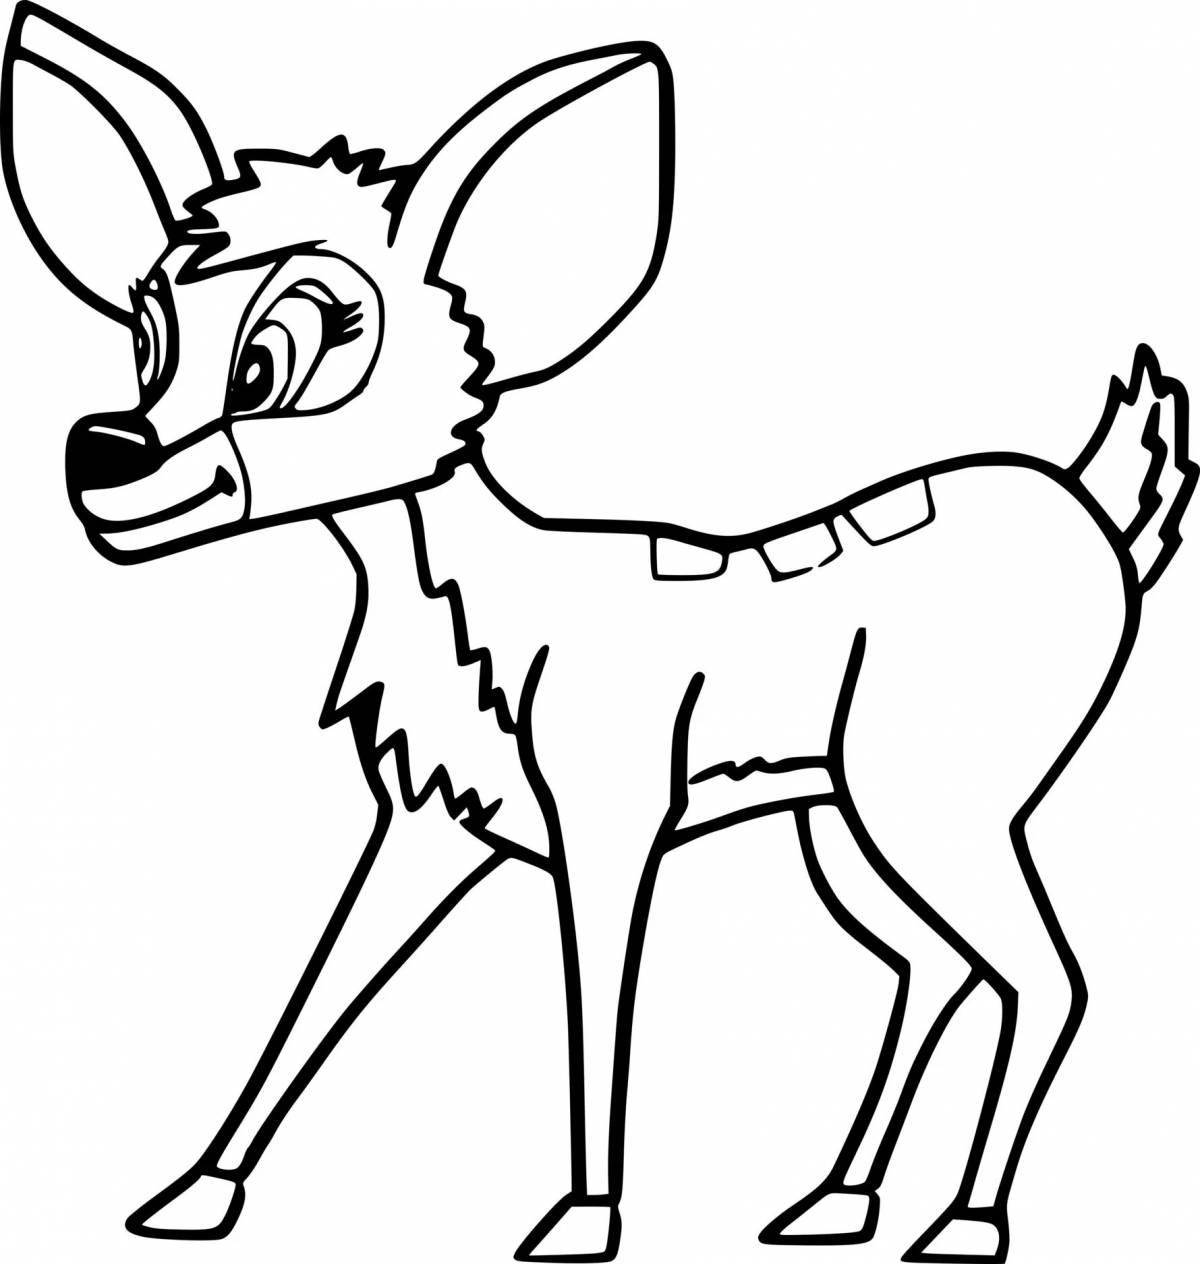 Siberian roe deer coloring page